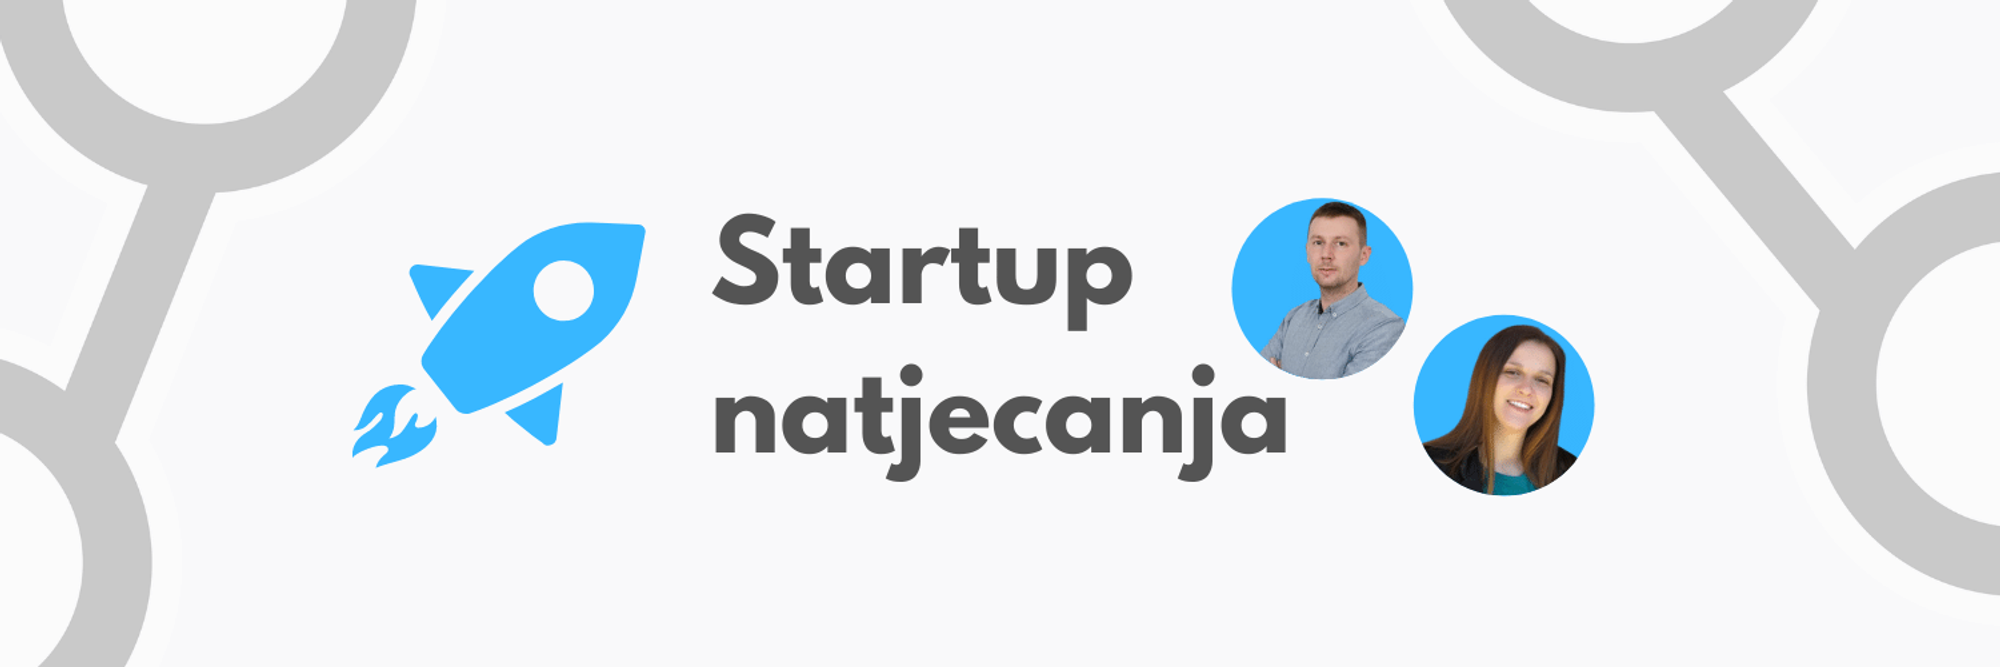 Startup natjecanja u Hrvatskoj